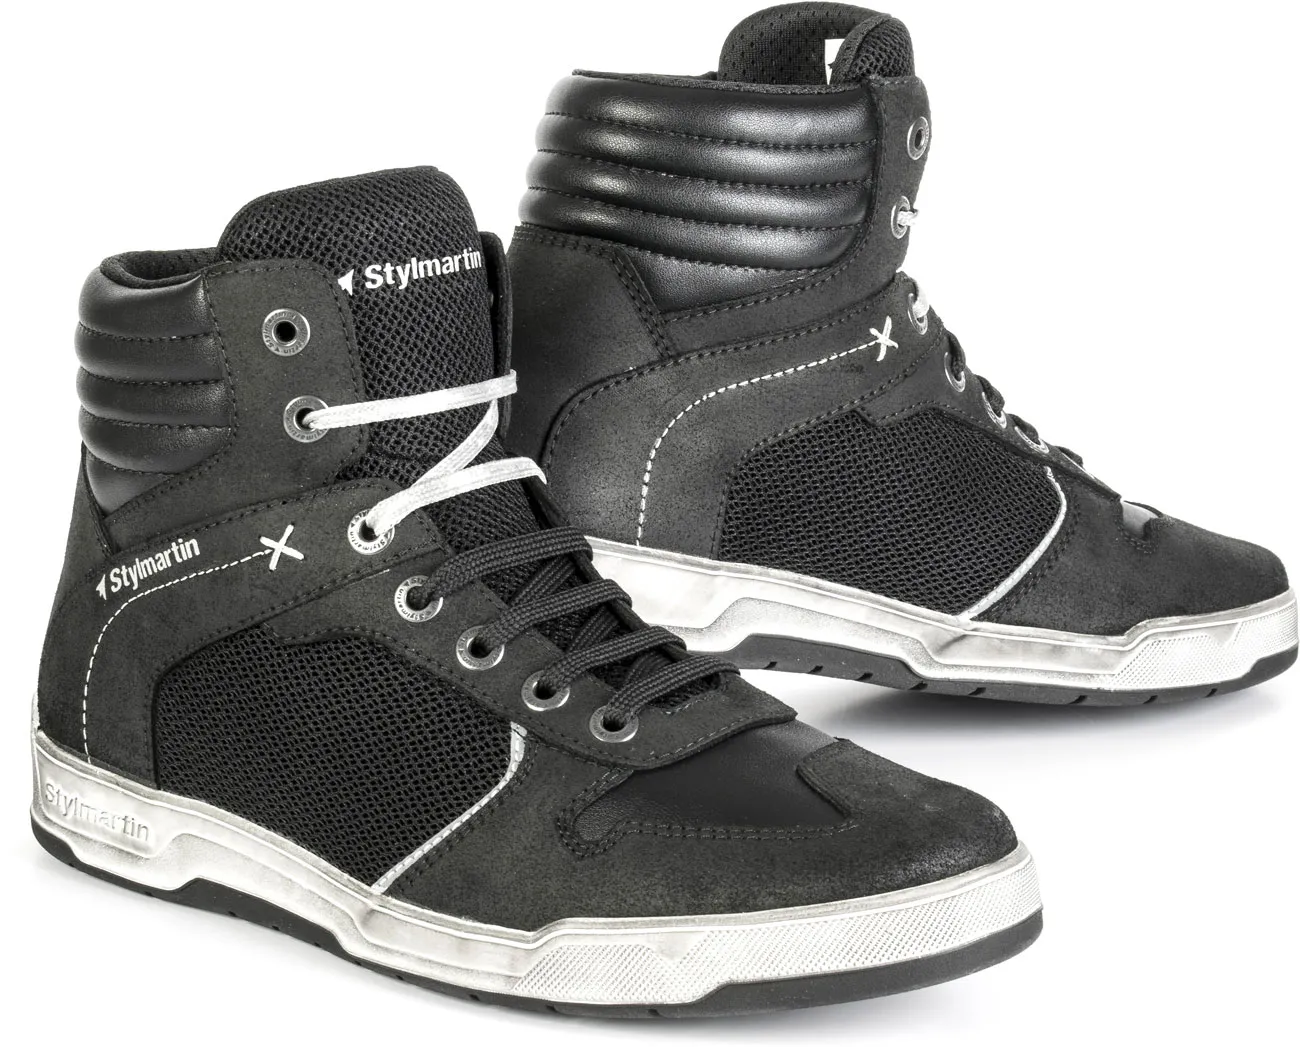 Stylmartin Atom, chaussures - Noir - 45 EU